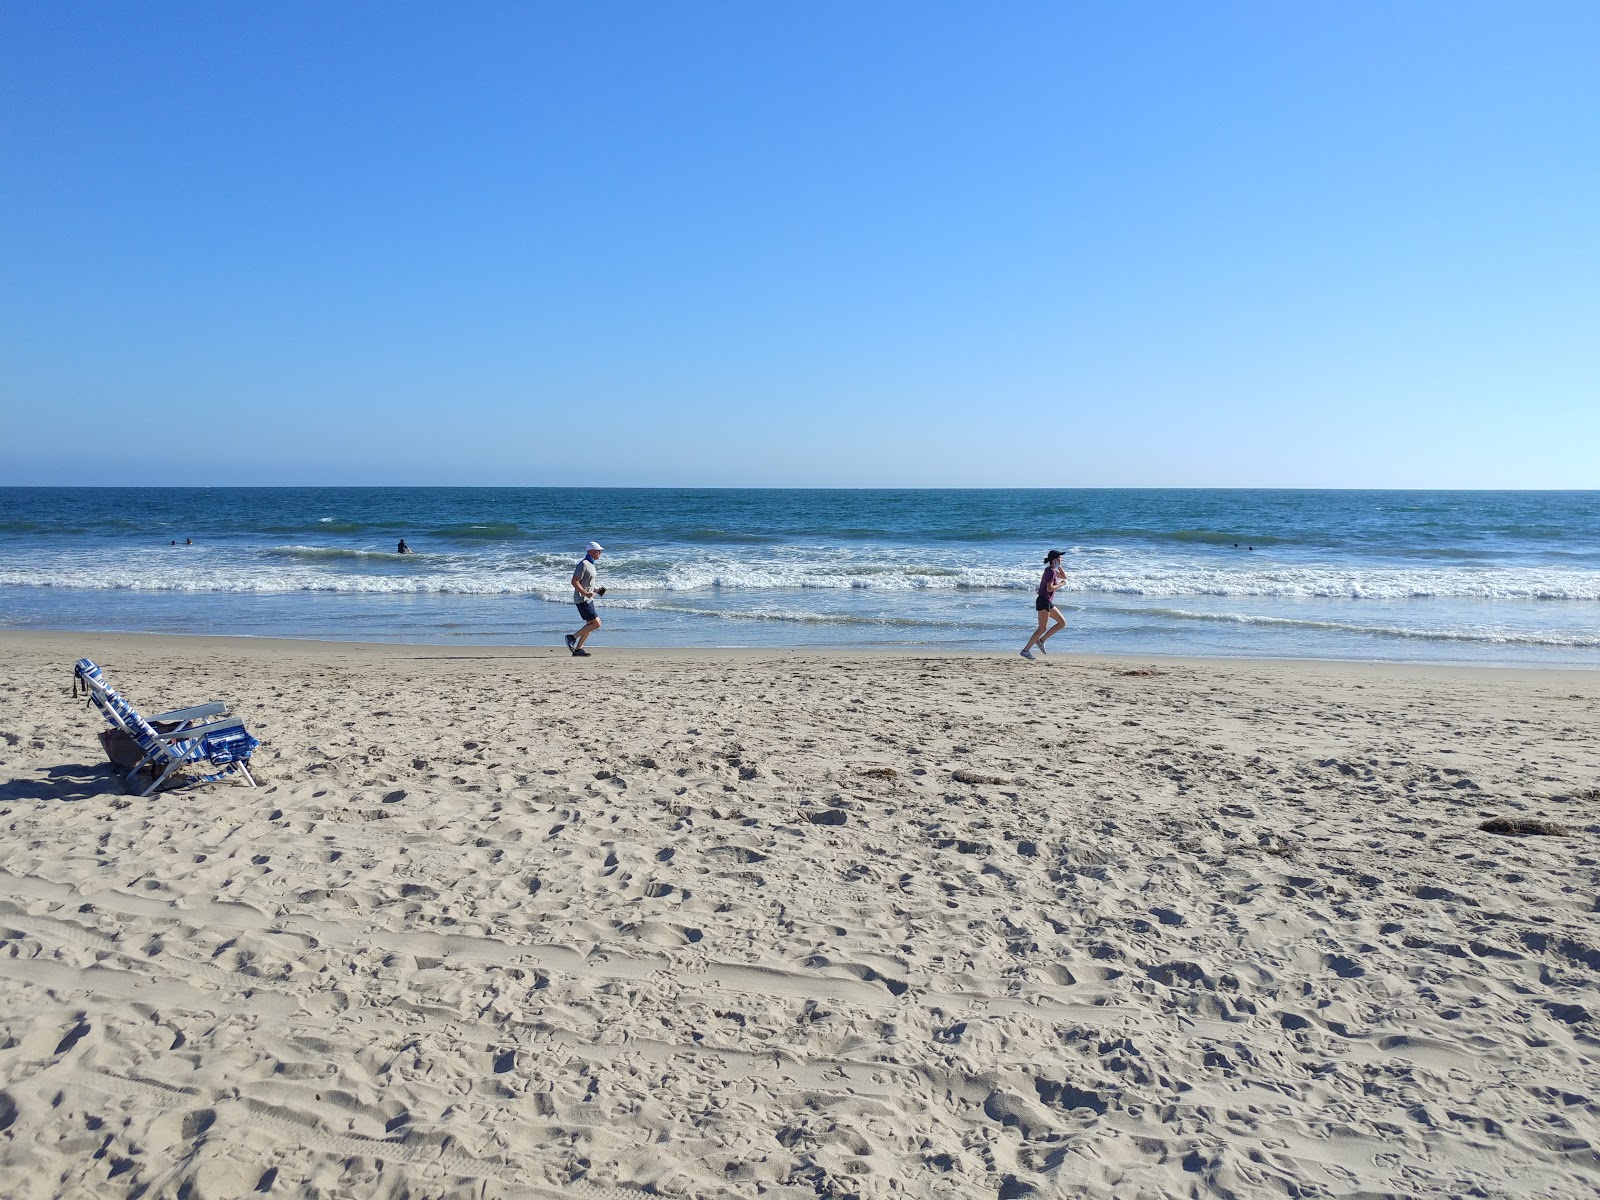 Fotografie cu Will Rogers Beach II - locul popular printre cunoscătorii de relaxare